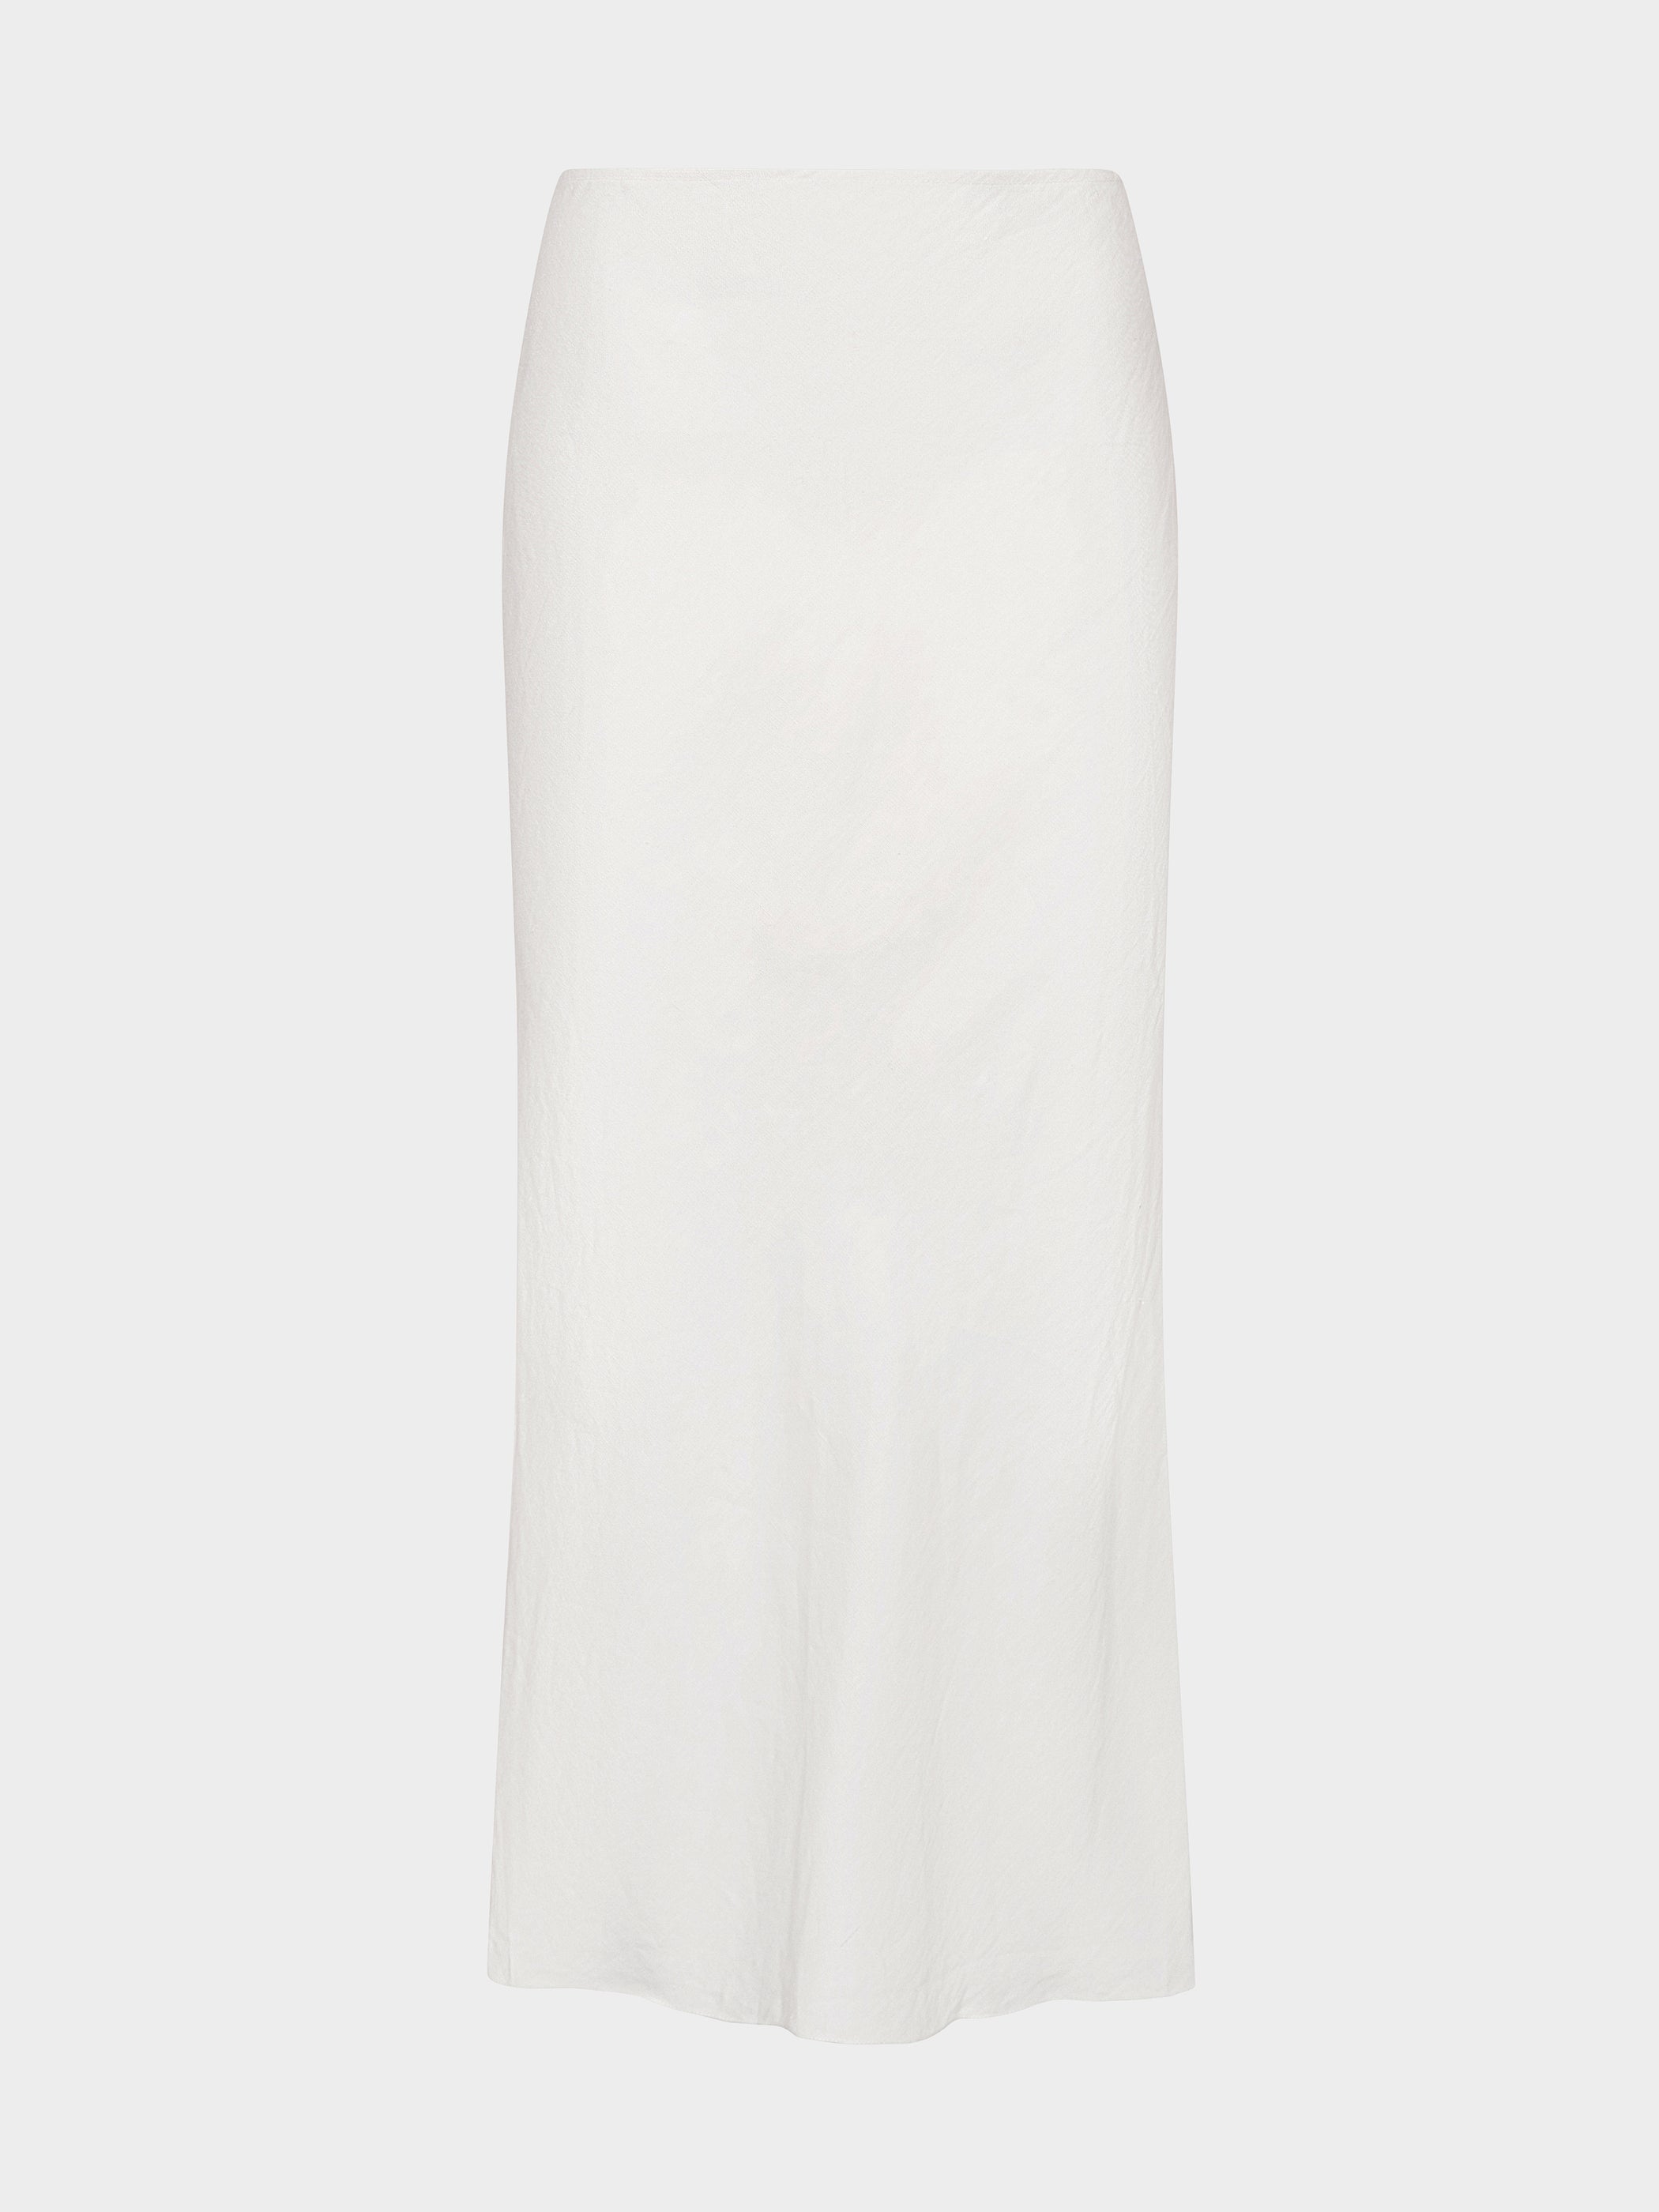 Carine B Skirt in Ivory